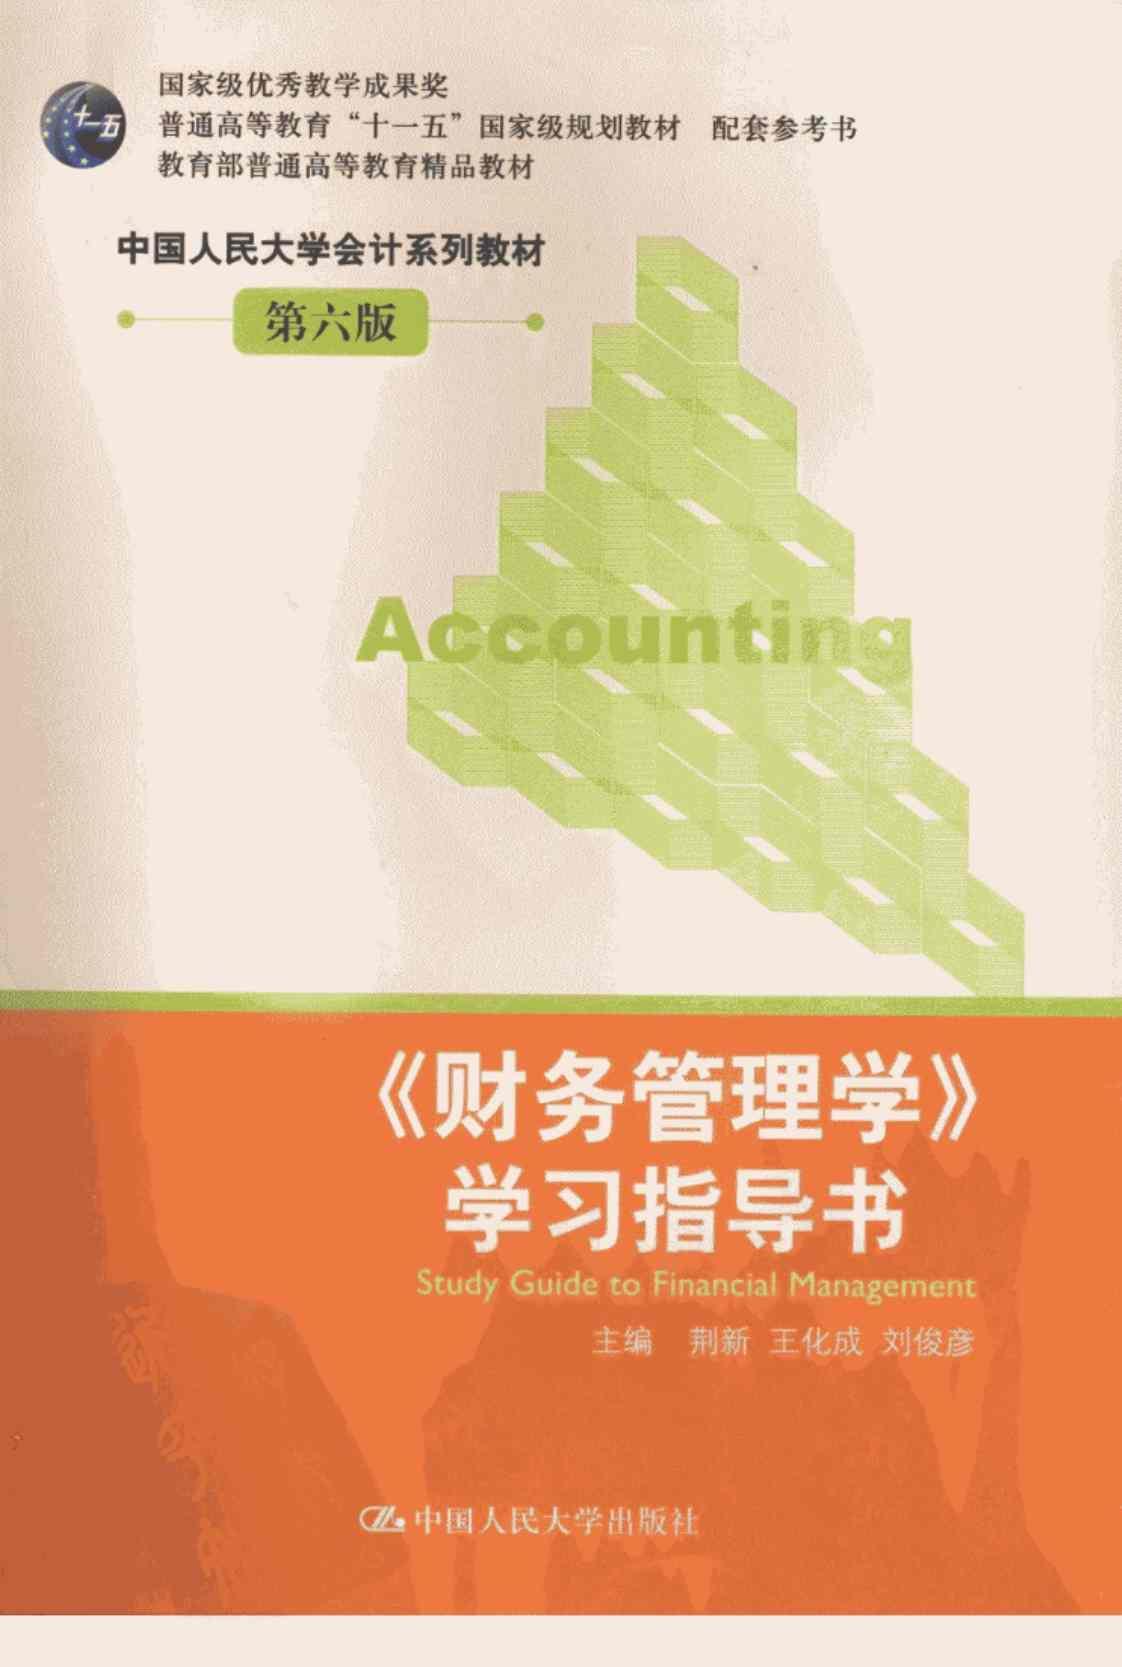 [《财务管理学》学习指导书][荆新、王化成、刘俊彦（主编）]高清PDF电子书